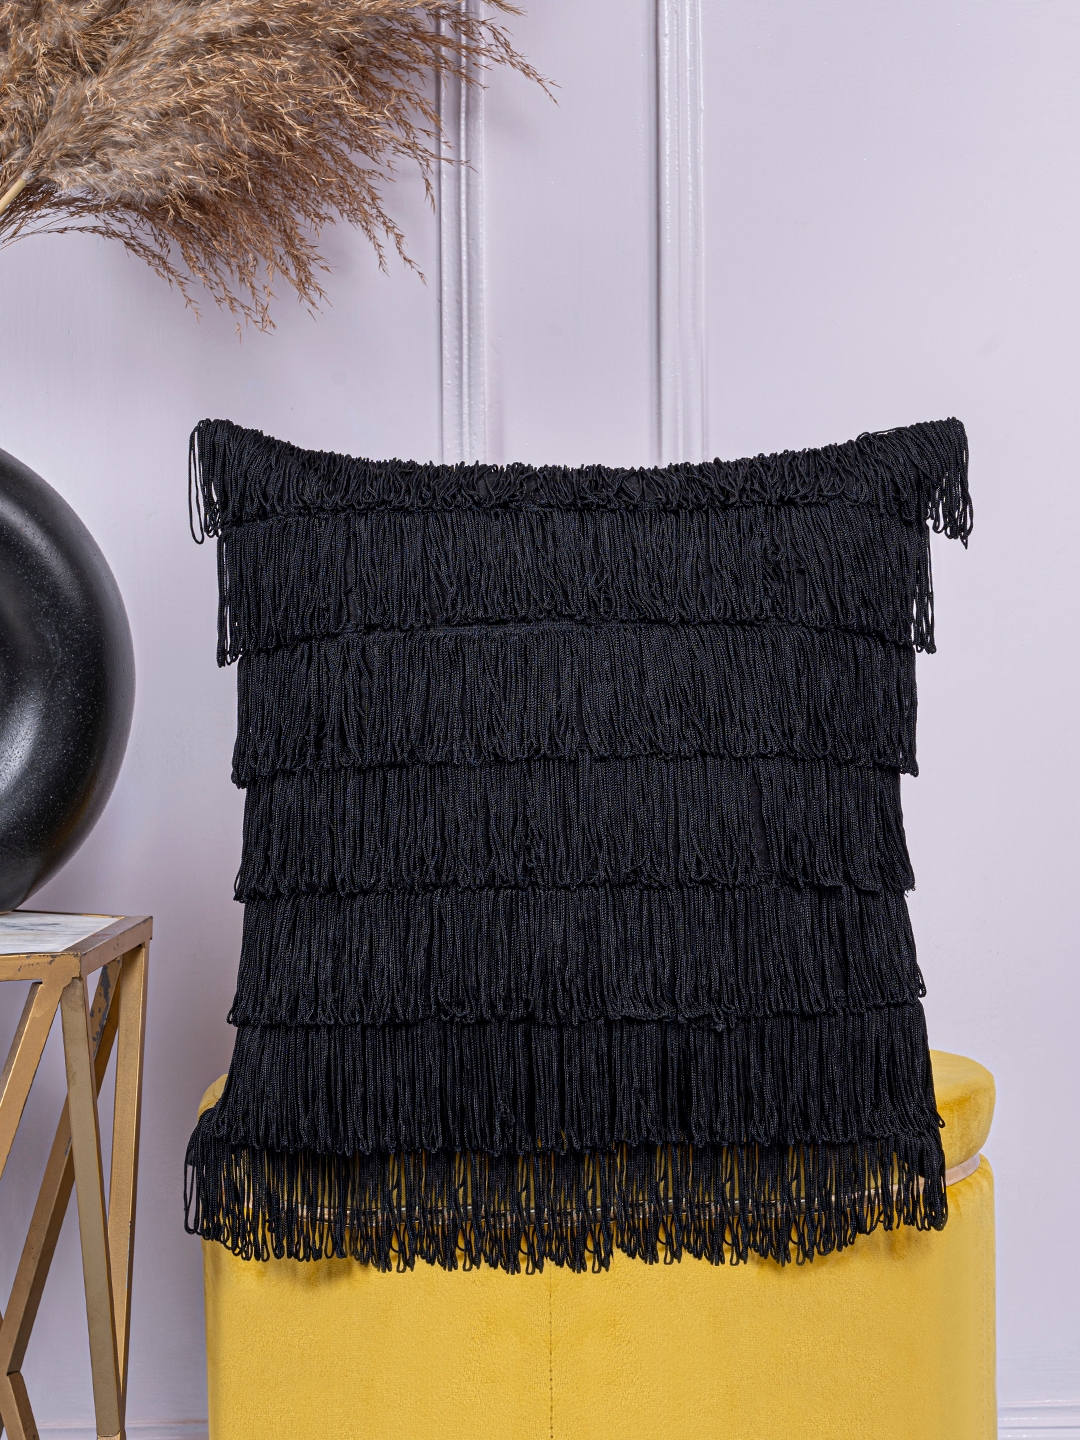 Black Fringe Lace detailed cushion cover